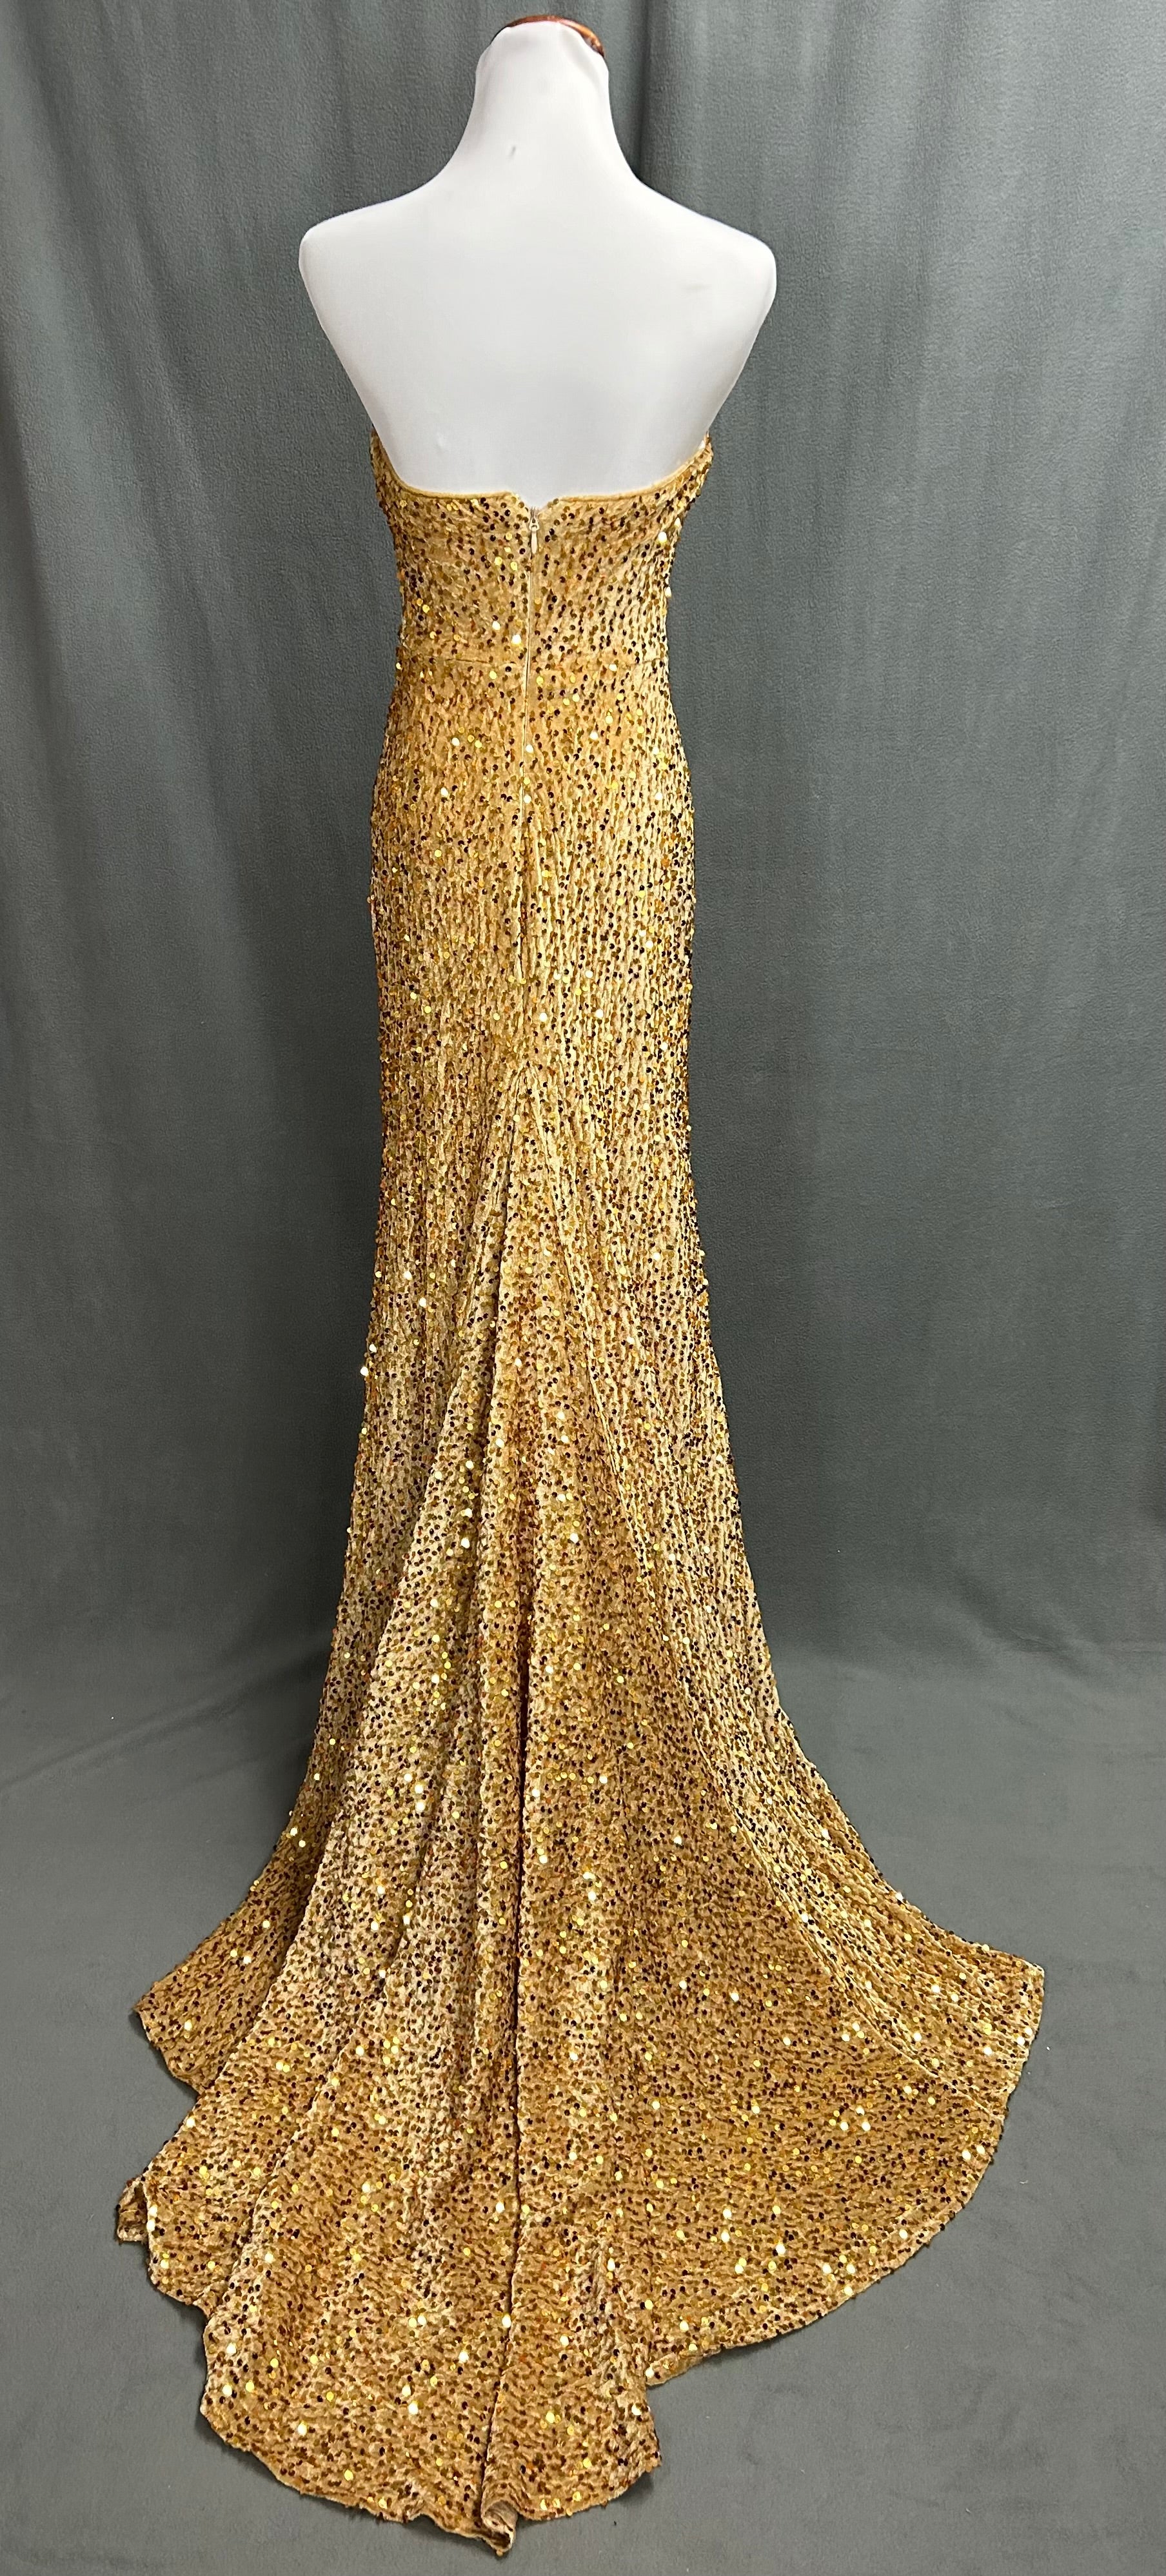 Yulure gold dress, size 4